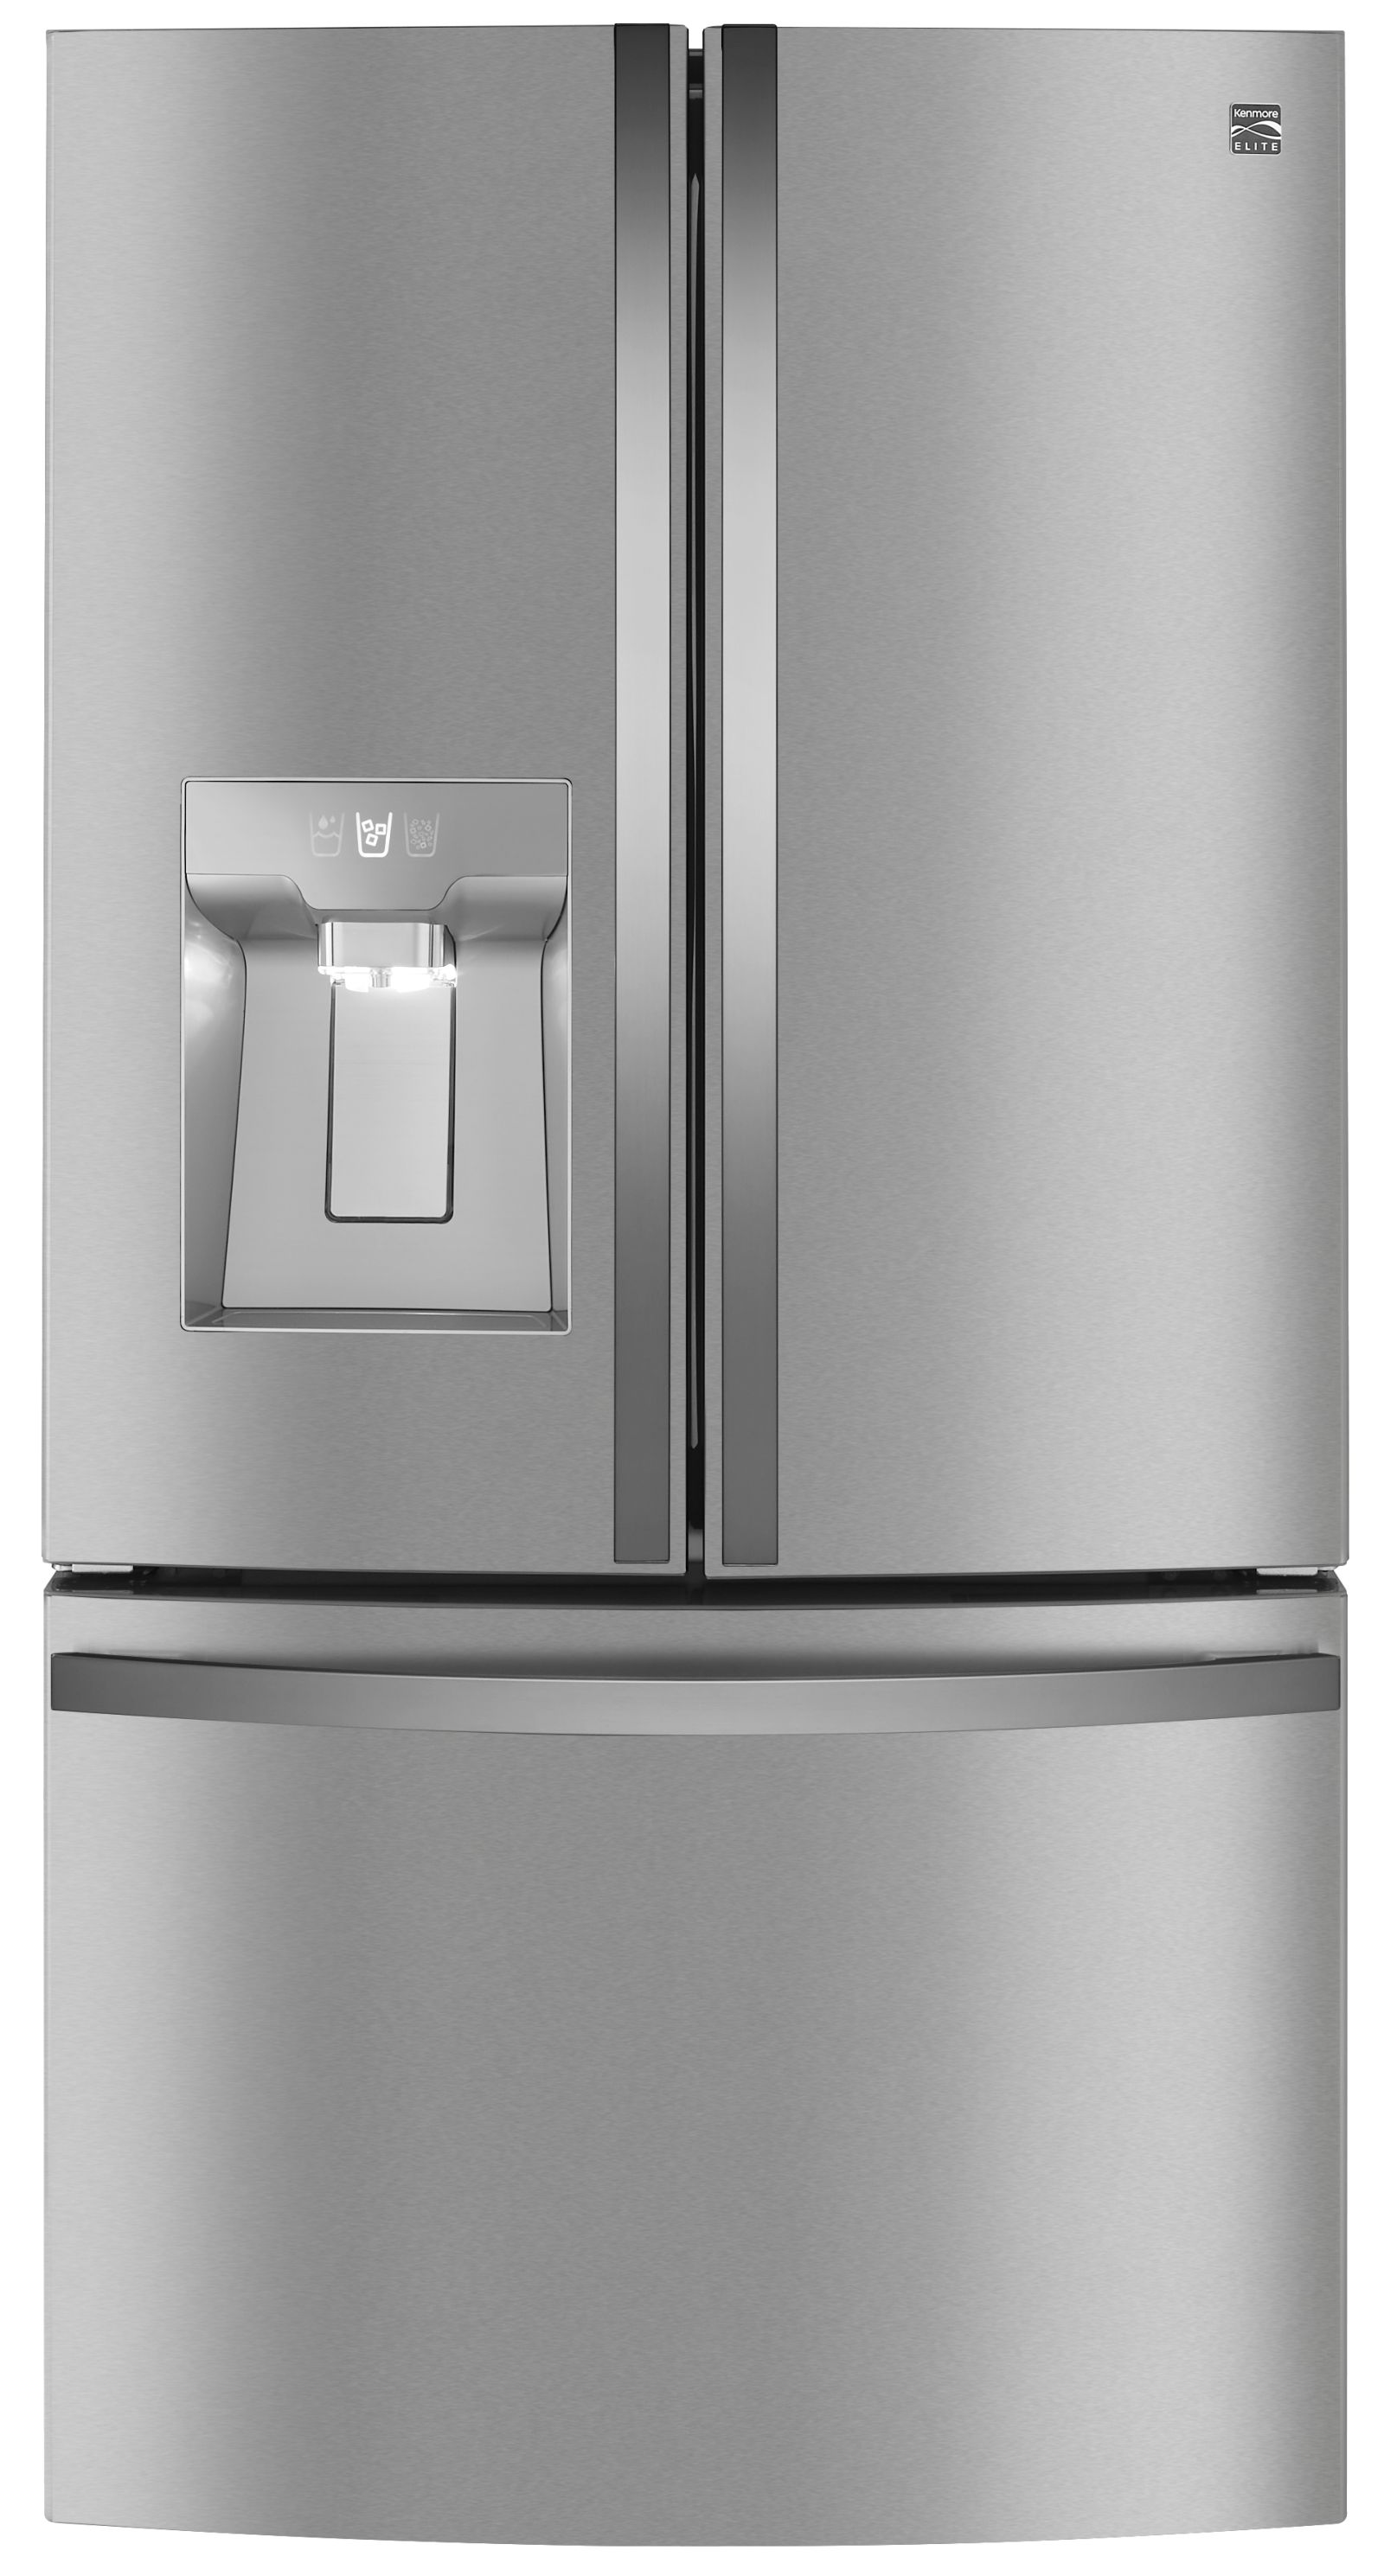 Kenmore Elite 74113 31.7 cu. ft. Smart French Door Refrigerator